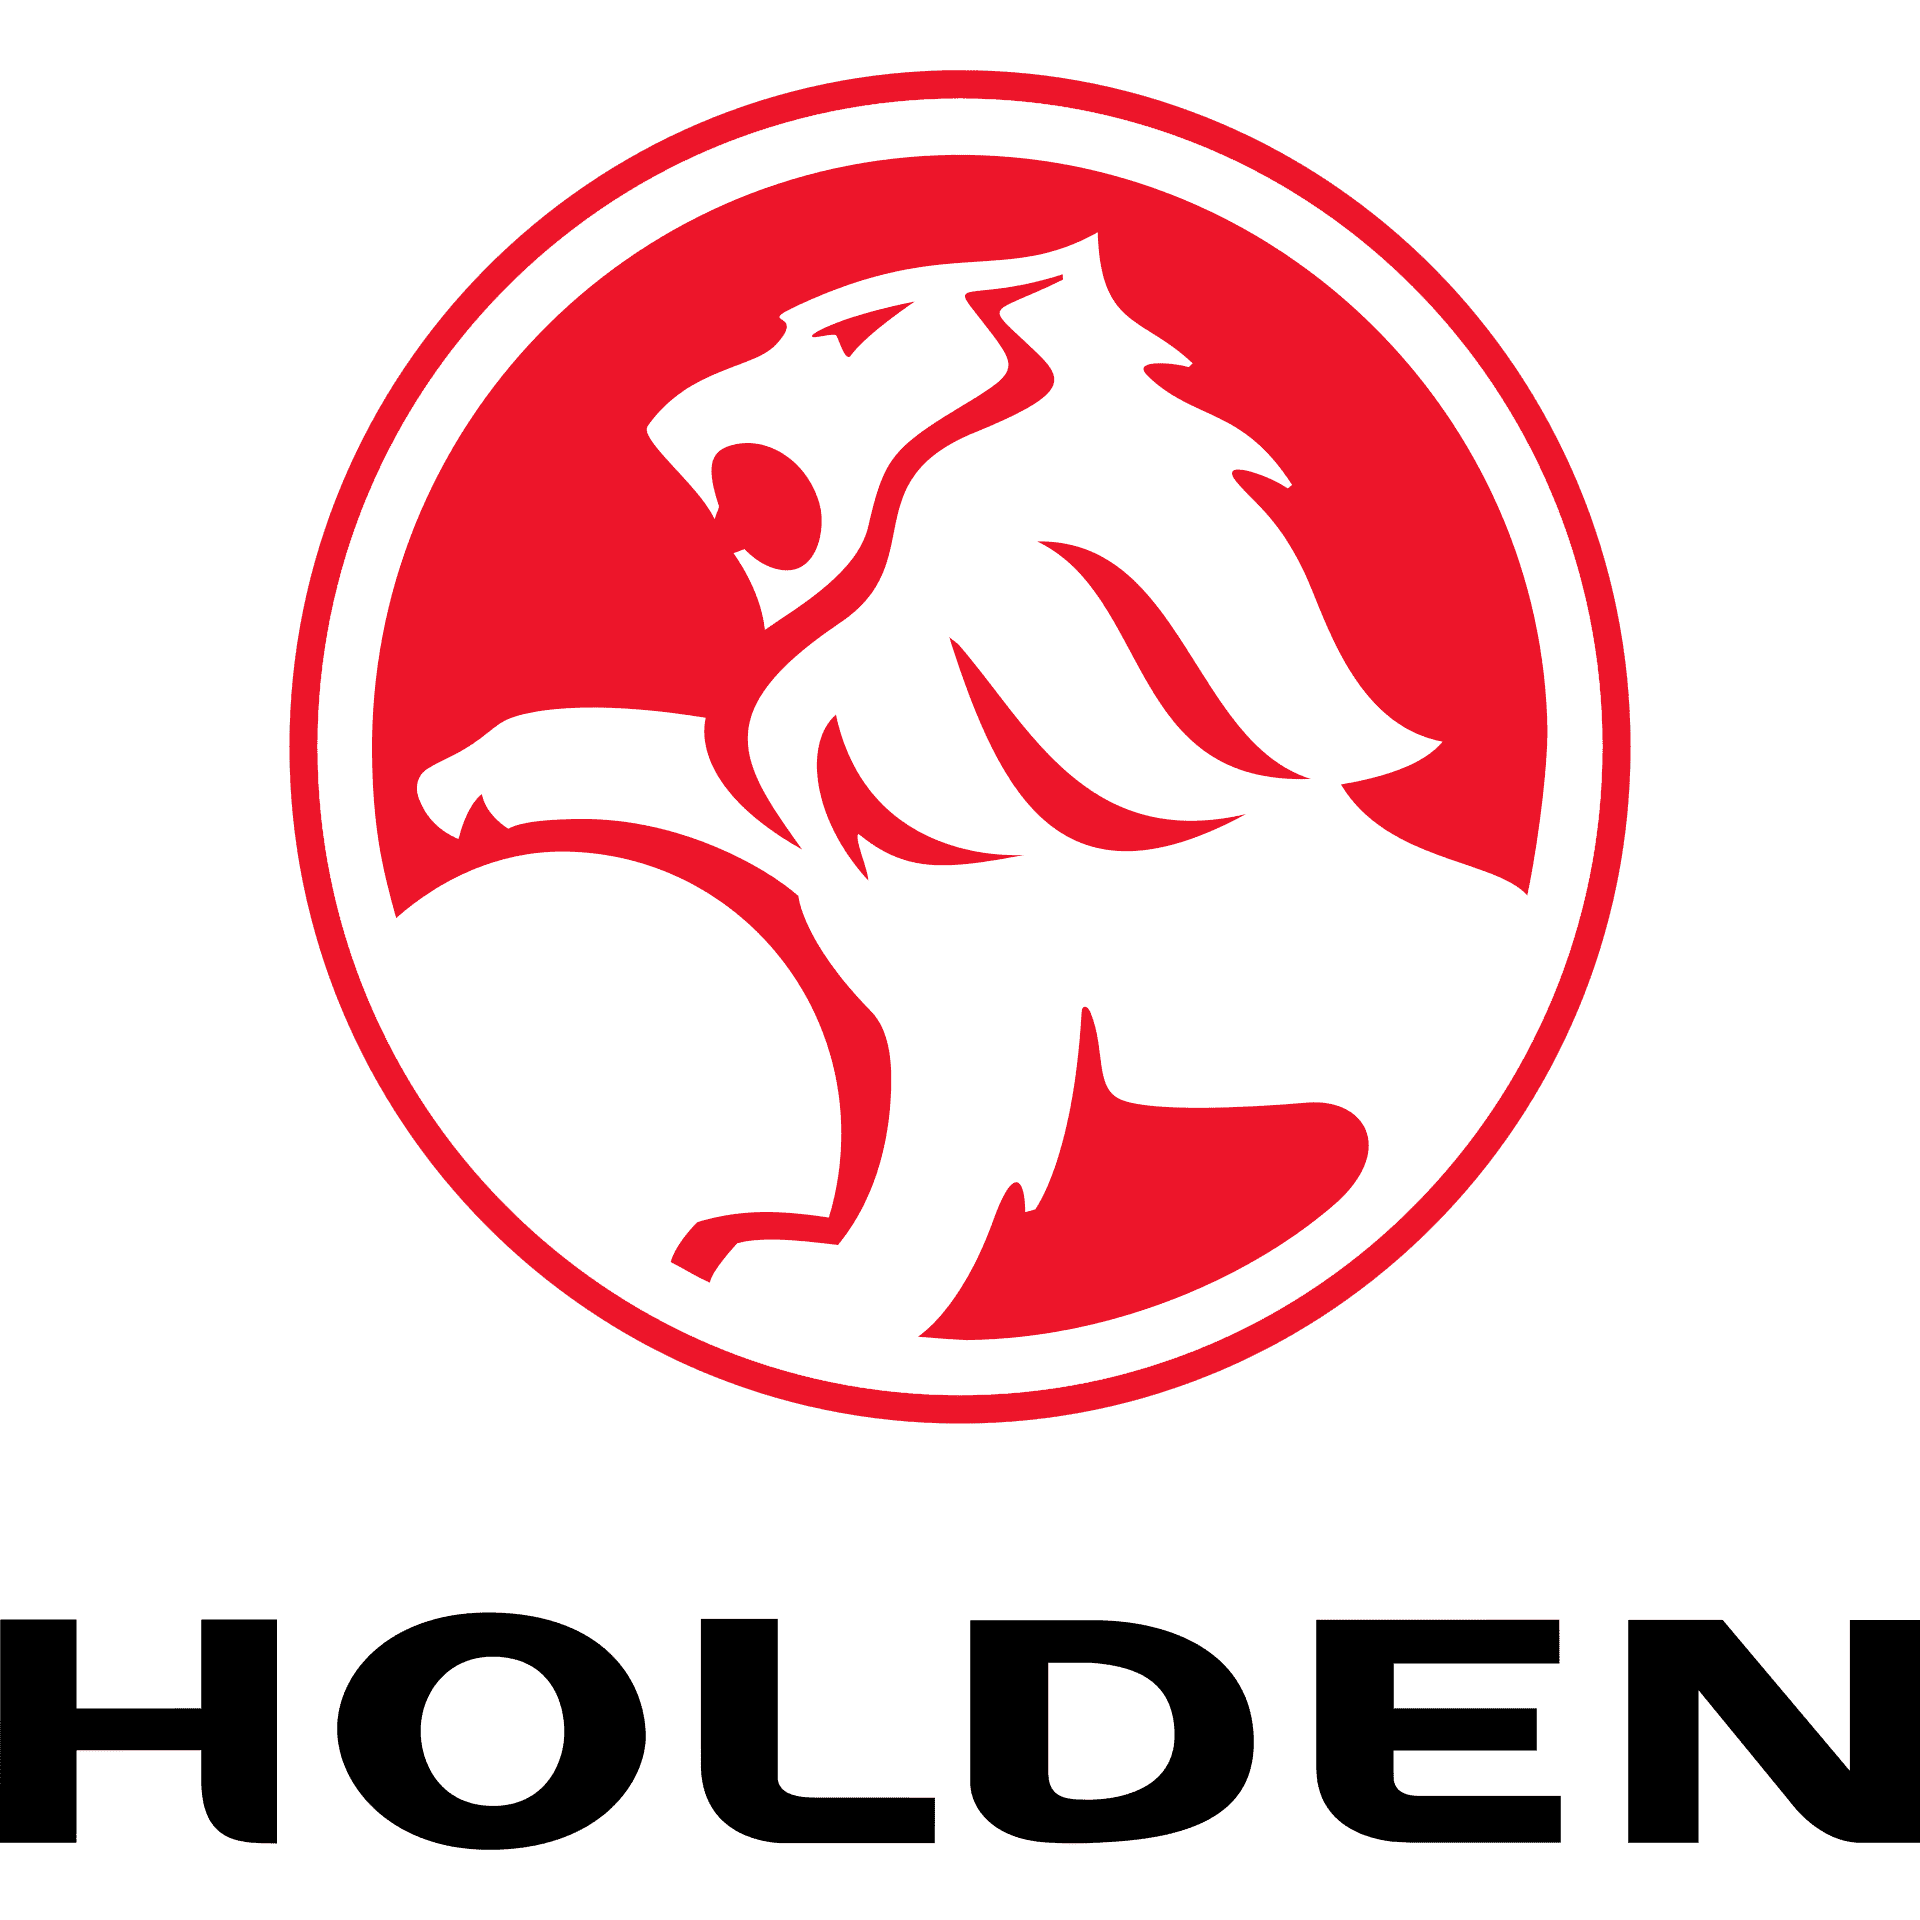  Holden